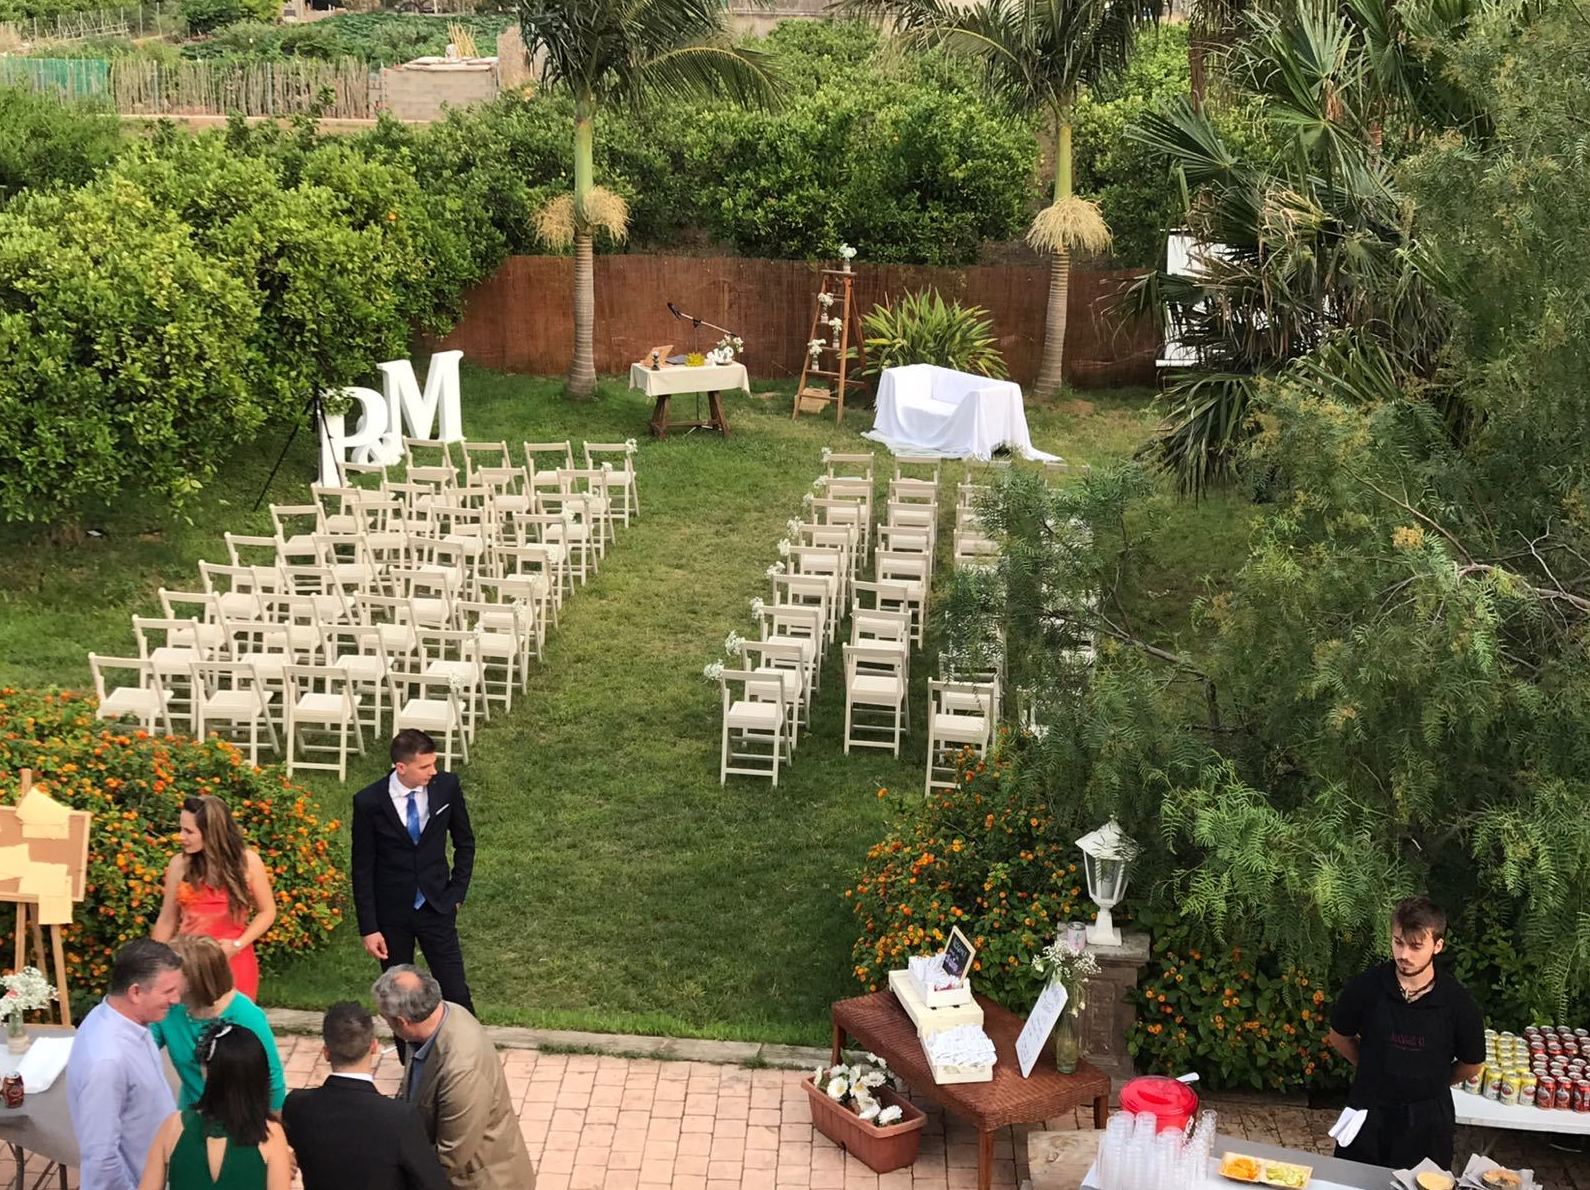 Foto 46 de Celebraciones de boda en  | Masía San Agustín